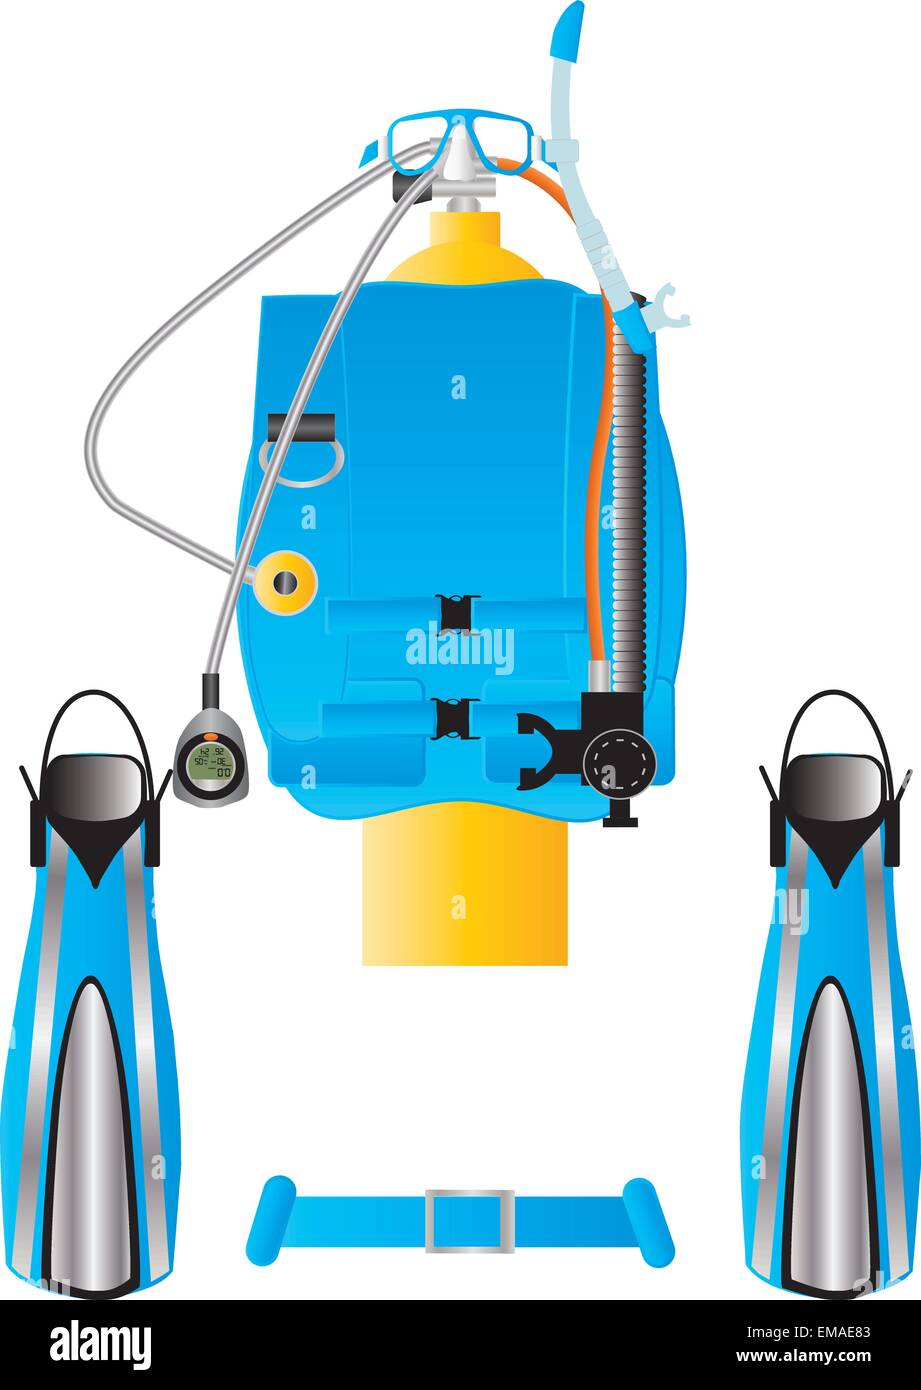 Un vecteur illustration de l'équipement de plongée palmes masque tuba bouyancy vérin régulateur compensateur de l'ordinateur de plongée Illustration de Vecteur